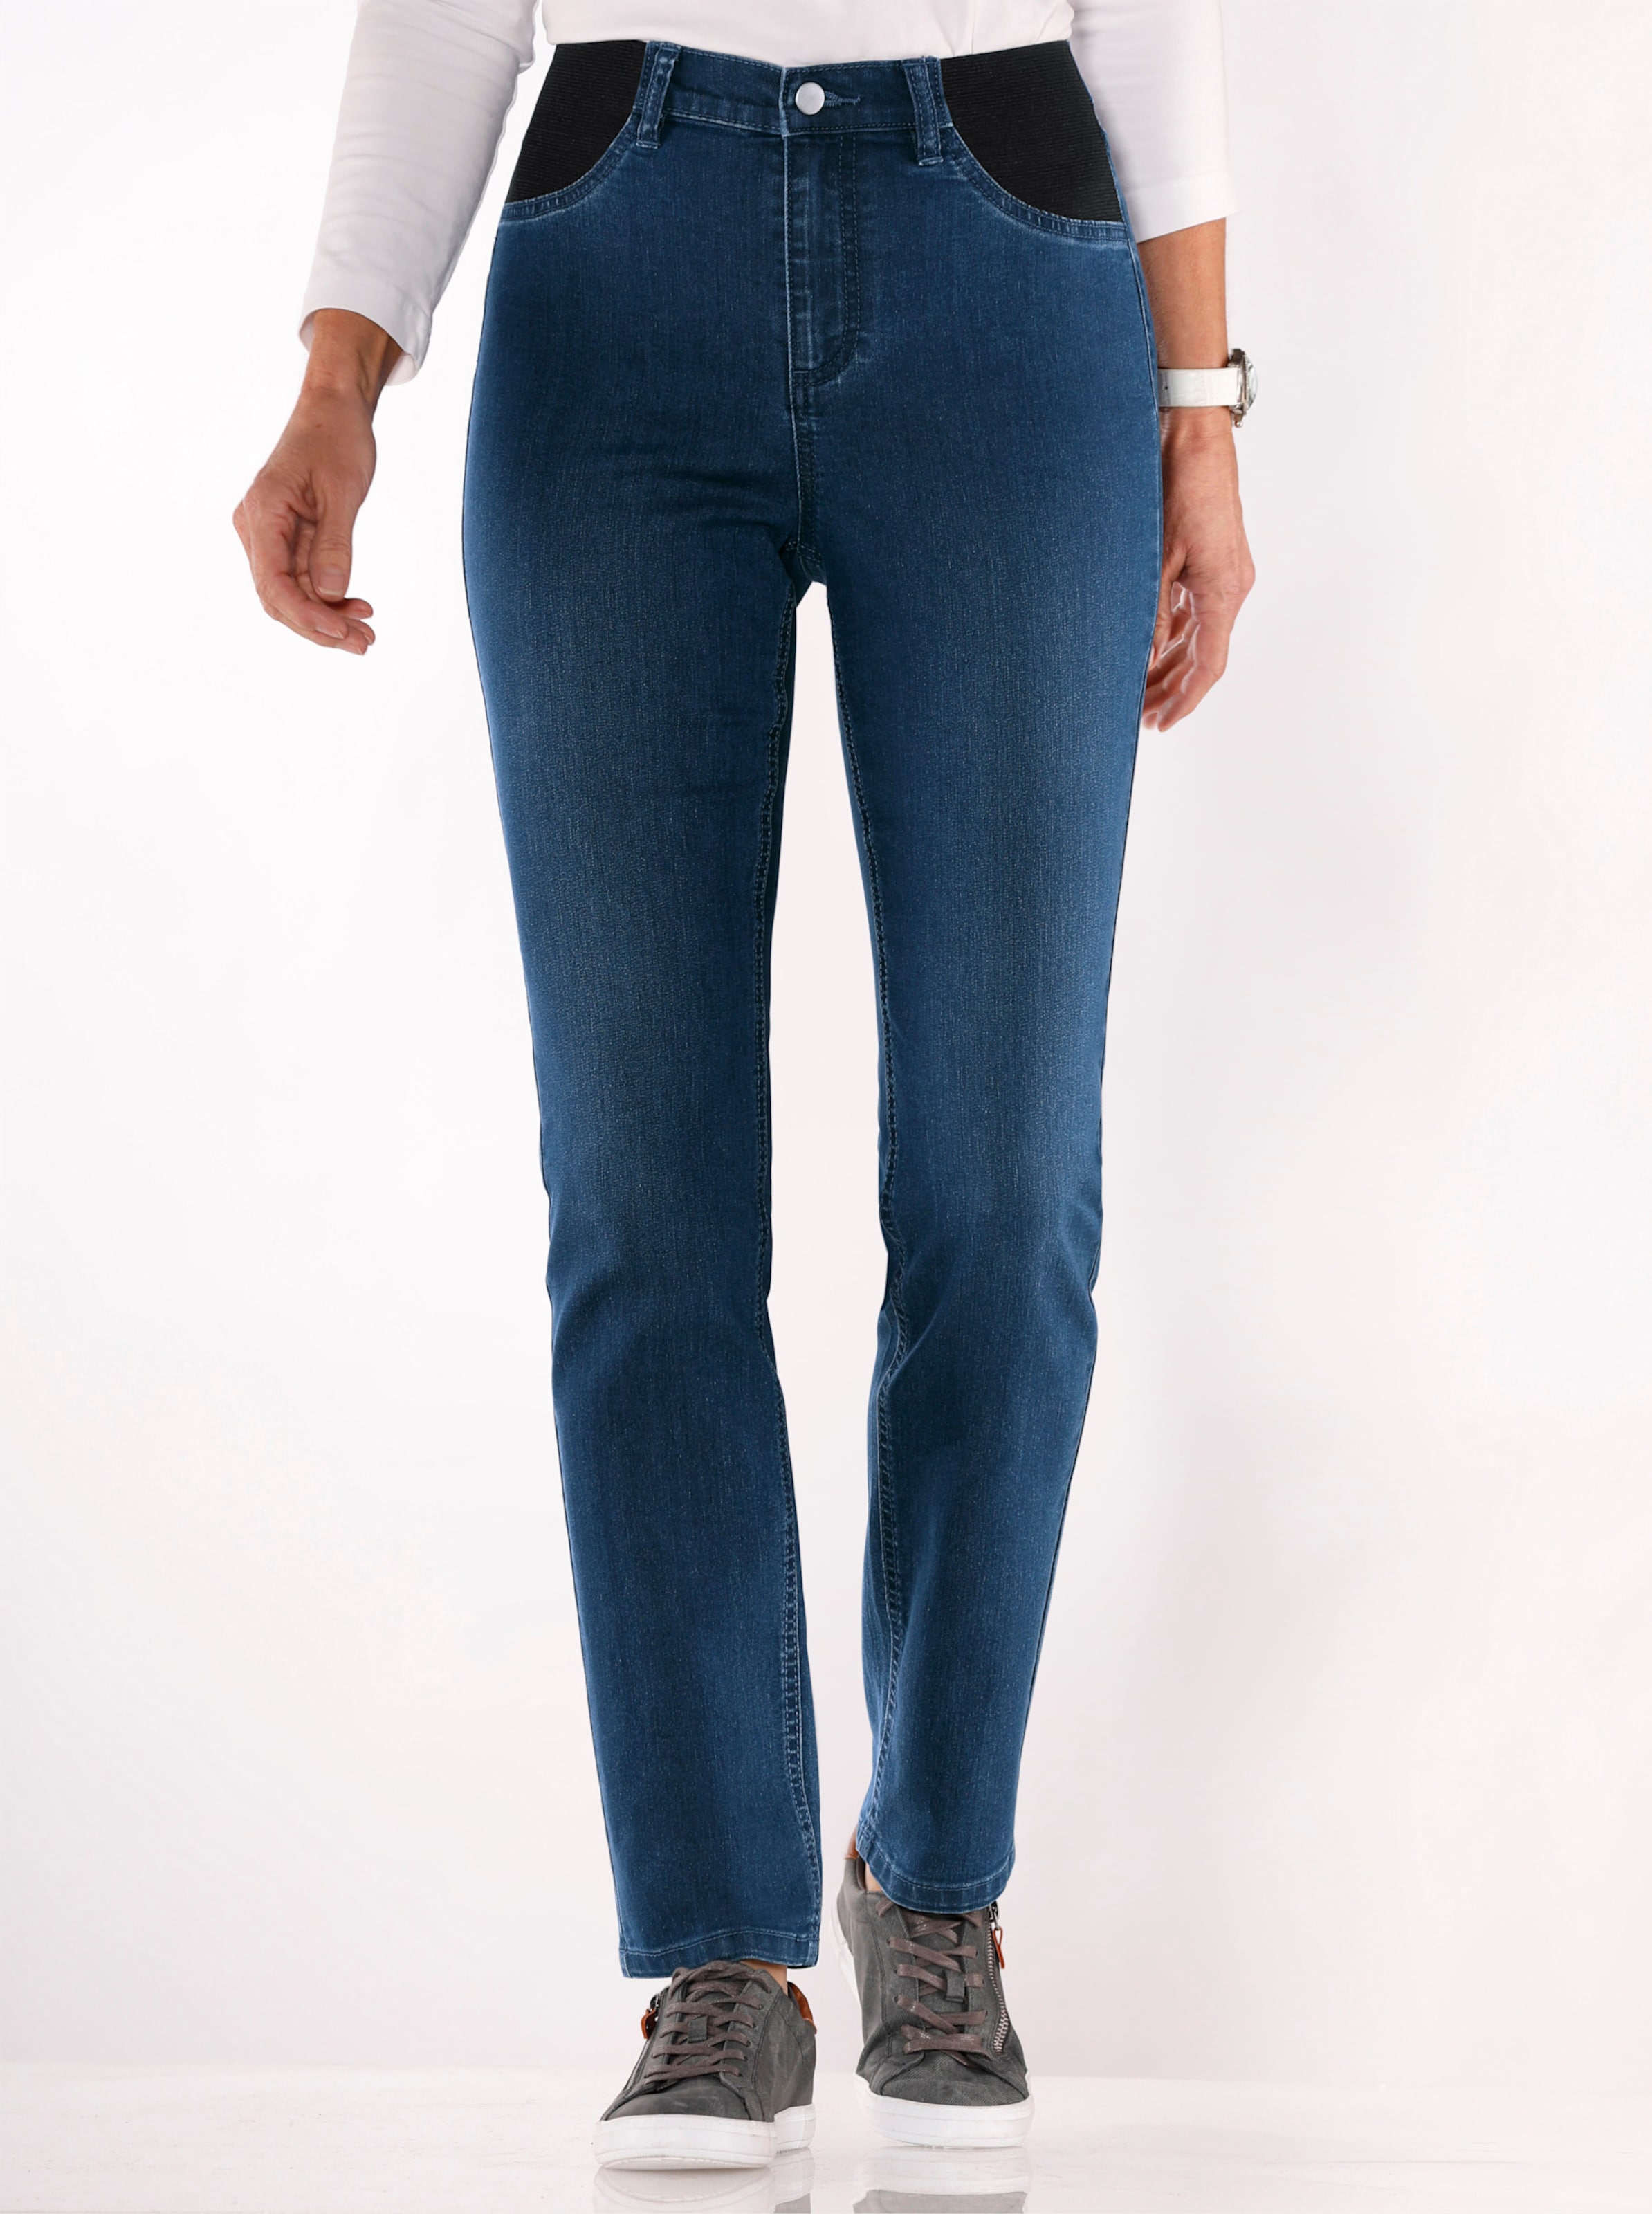 Witt Damen Jeans mit elastischen Einsätzen, blue-stone-washed